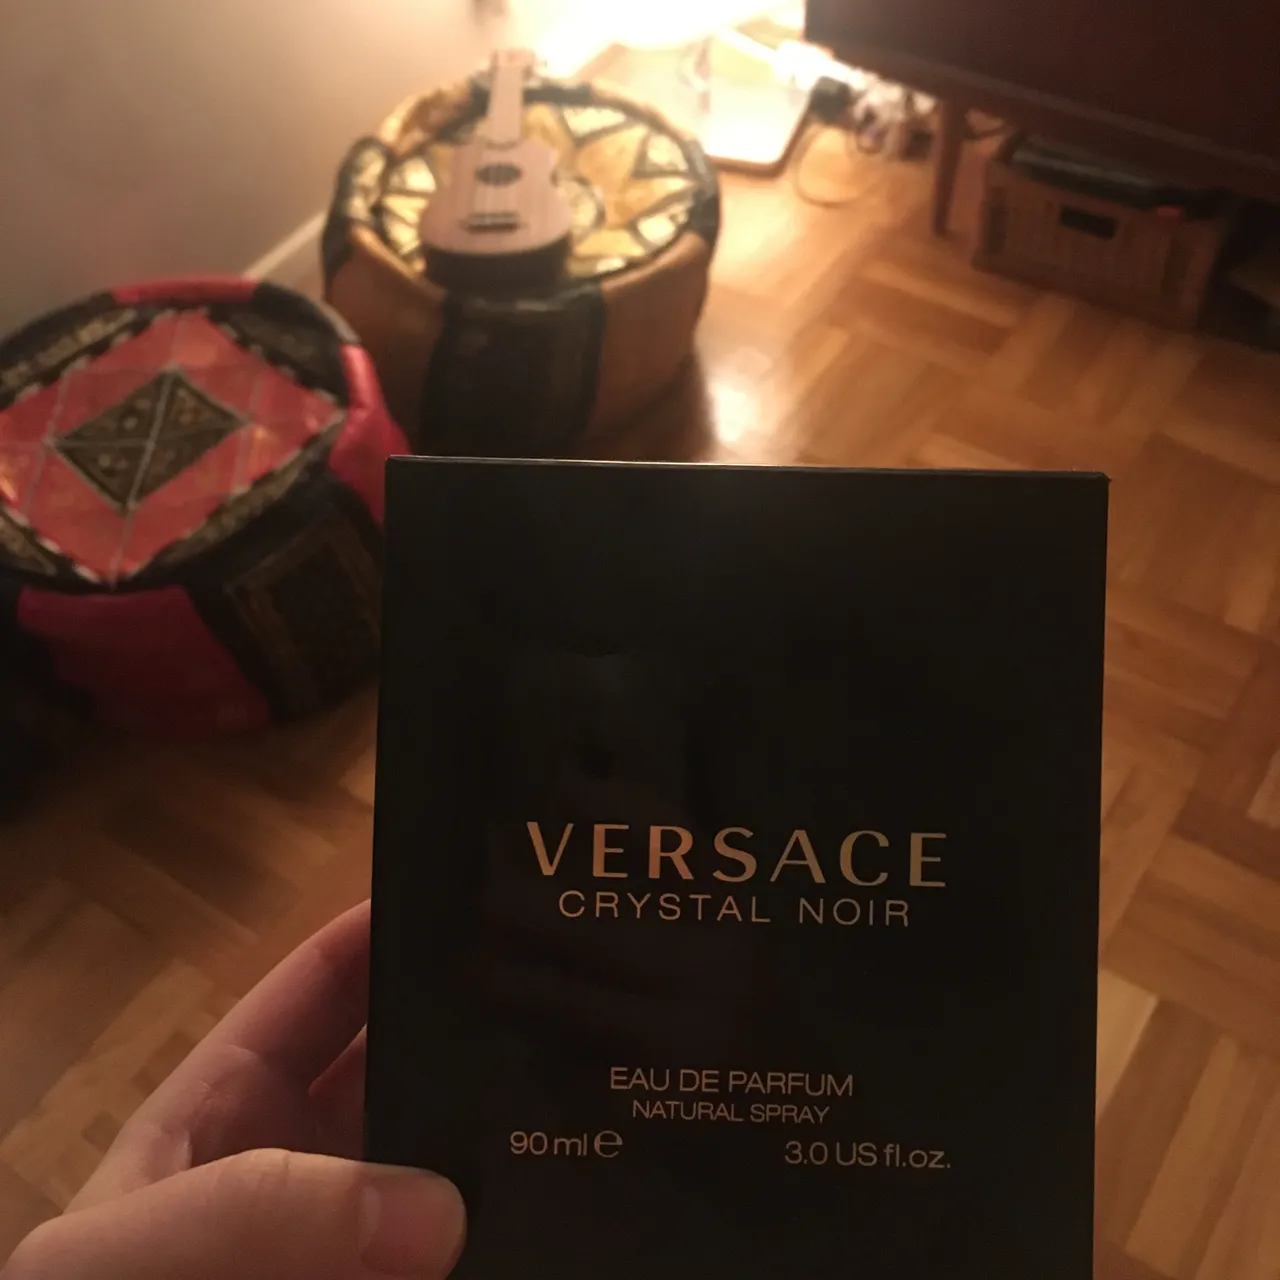 Versace Crystal Noir eau de parfum 90 ml photo 1